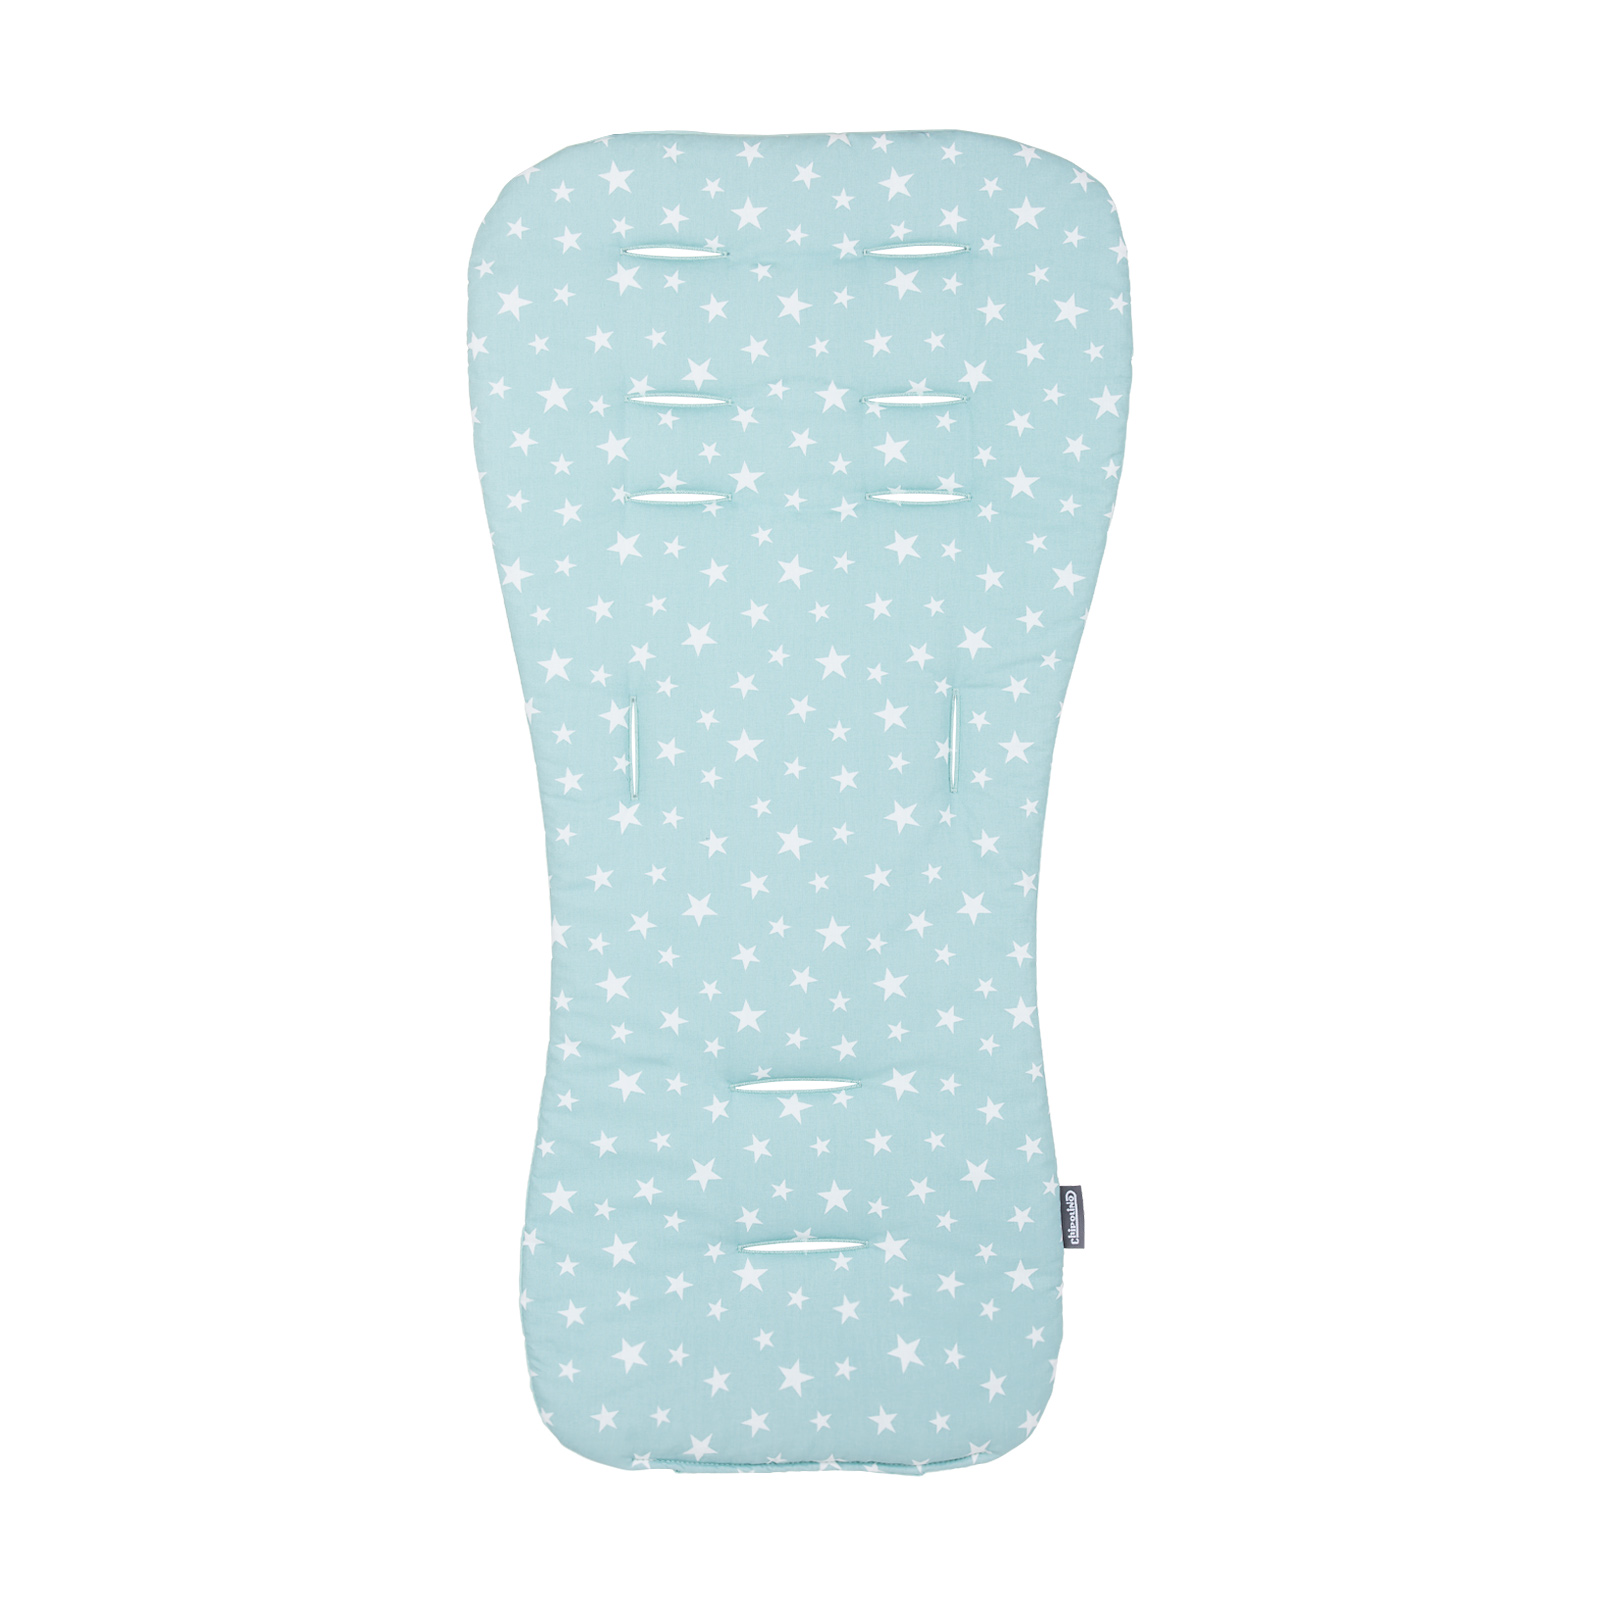 Chipolino Soft pad for stroller mint/mint stars VVPAD02404MINT